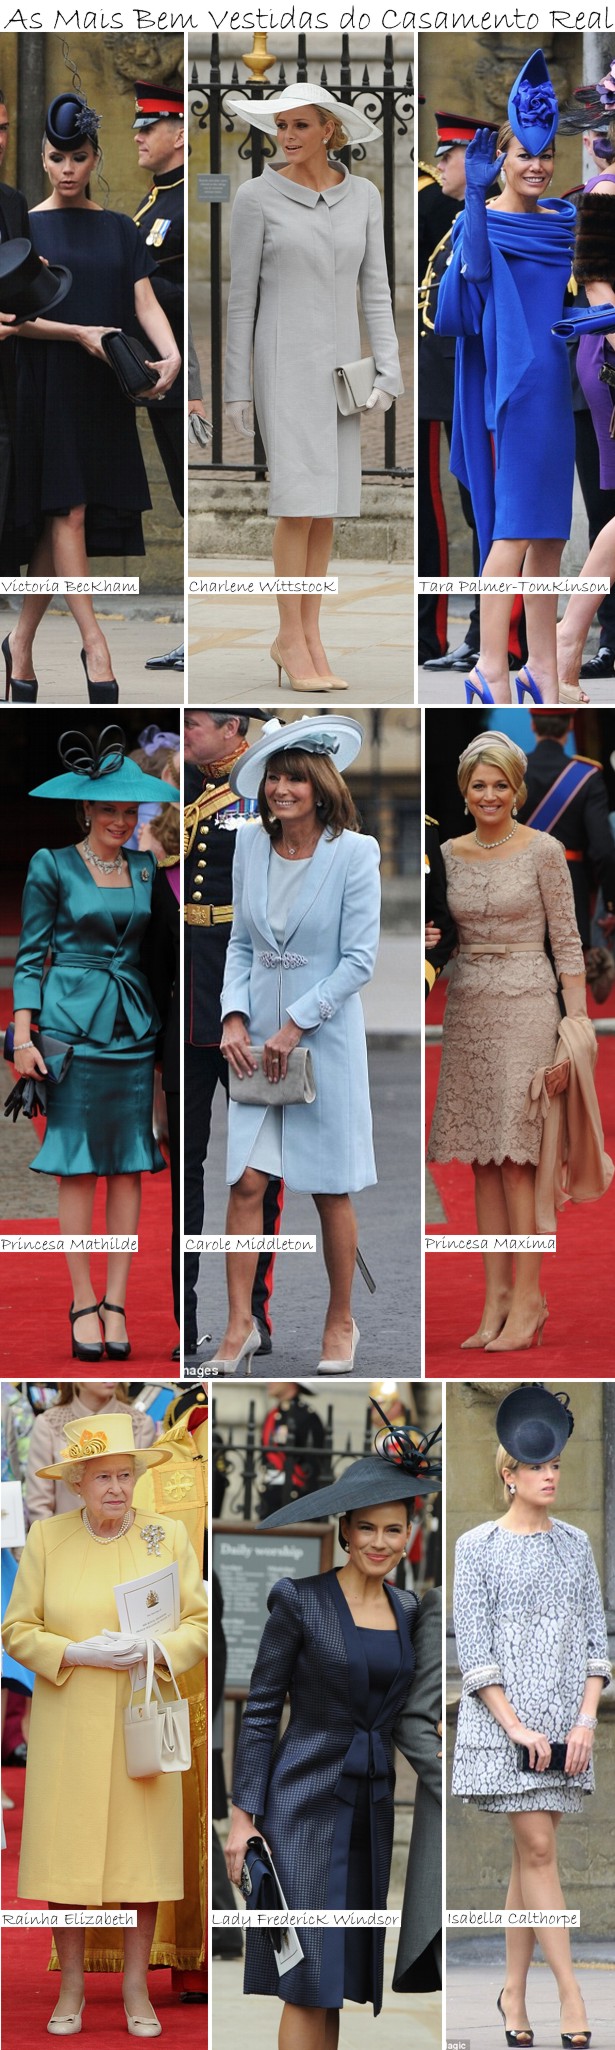 As Mais Bem Vestidas do Casamento Real Vote: As Mais Bem Vestidas do Casamento Real